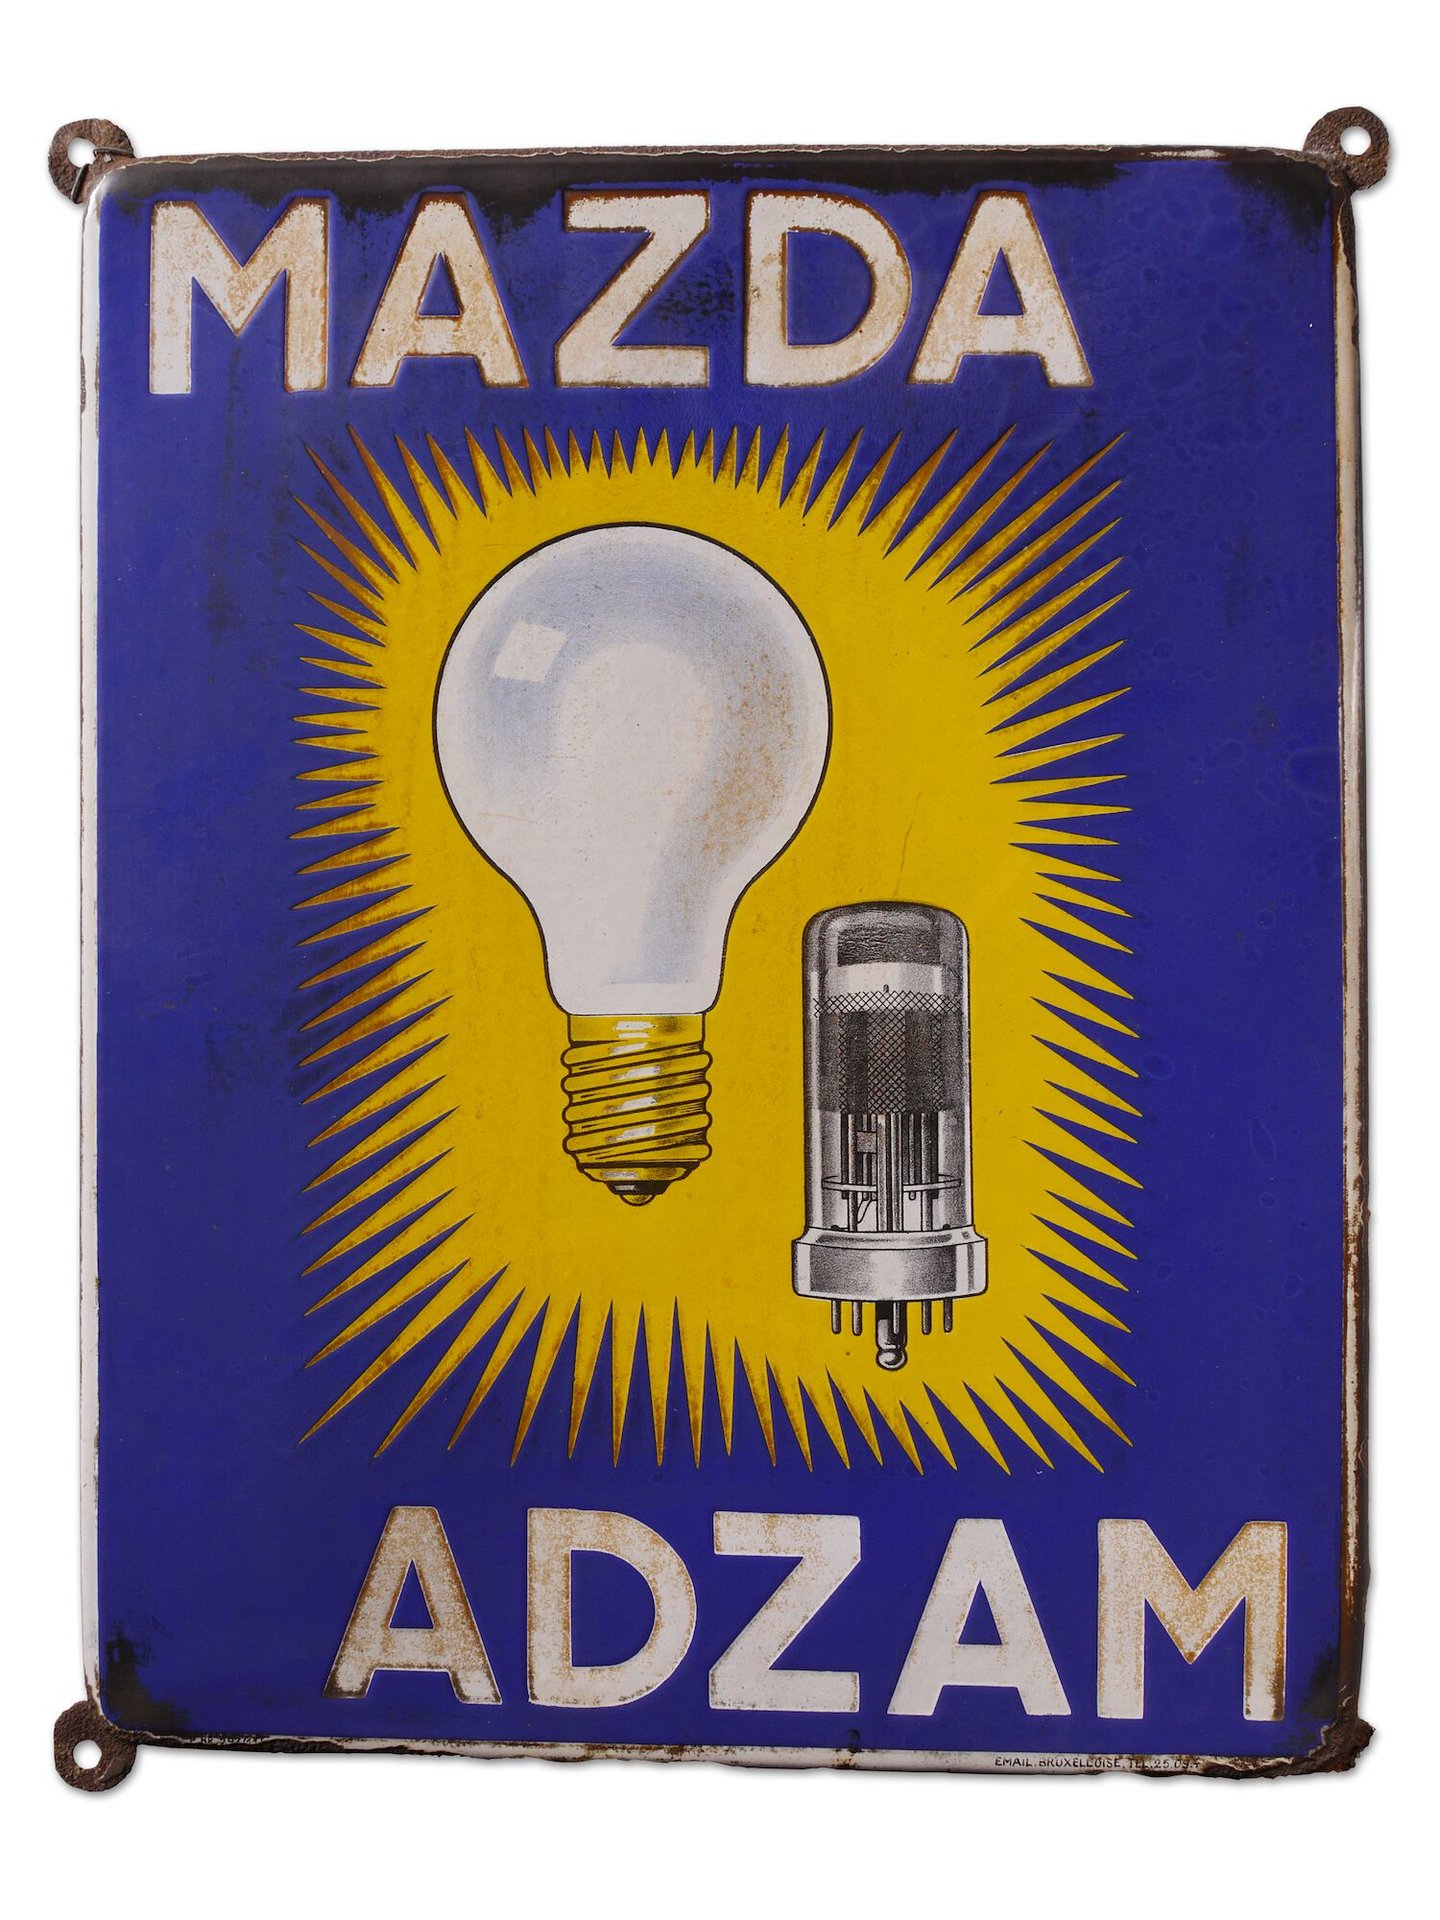 Geëmailleerd reclamebord voor lampen van het merk Mazda en Adzam